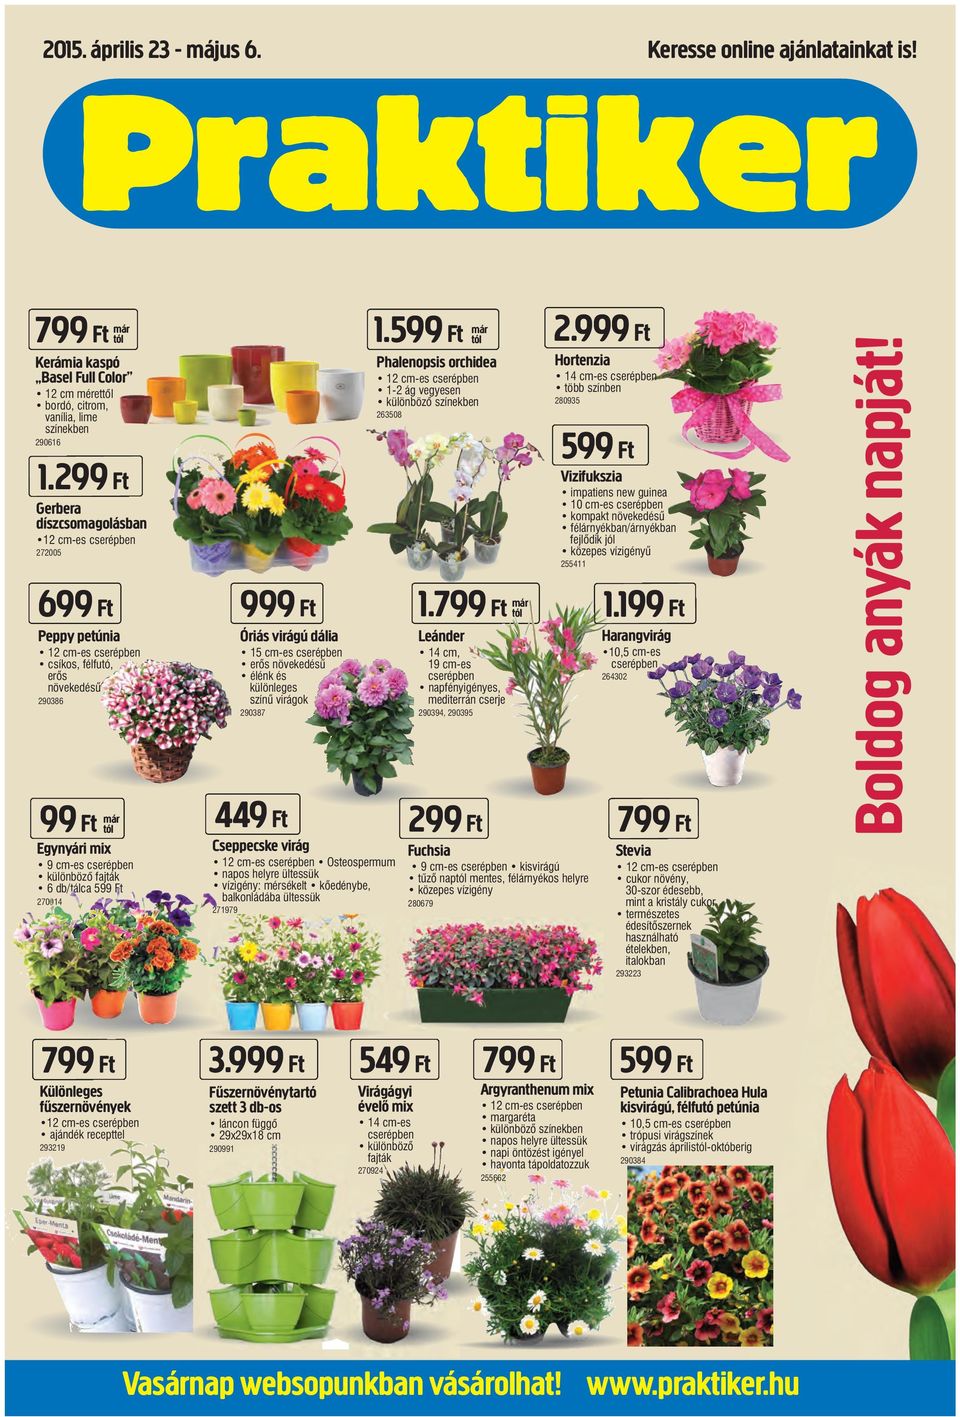 599 Ft 270014 999 Ft Óriás virágú dália 15 cm-es cserépben erős növekedésű élénk és különleges színű virágok 290387 1.